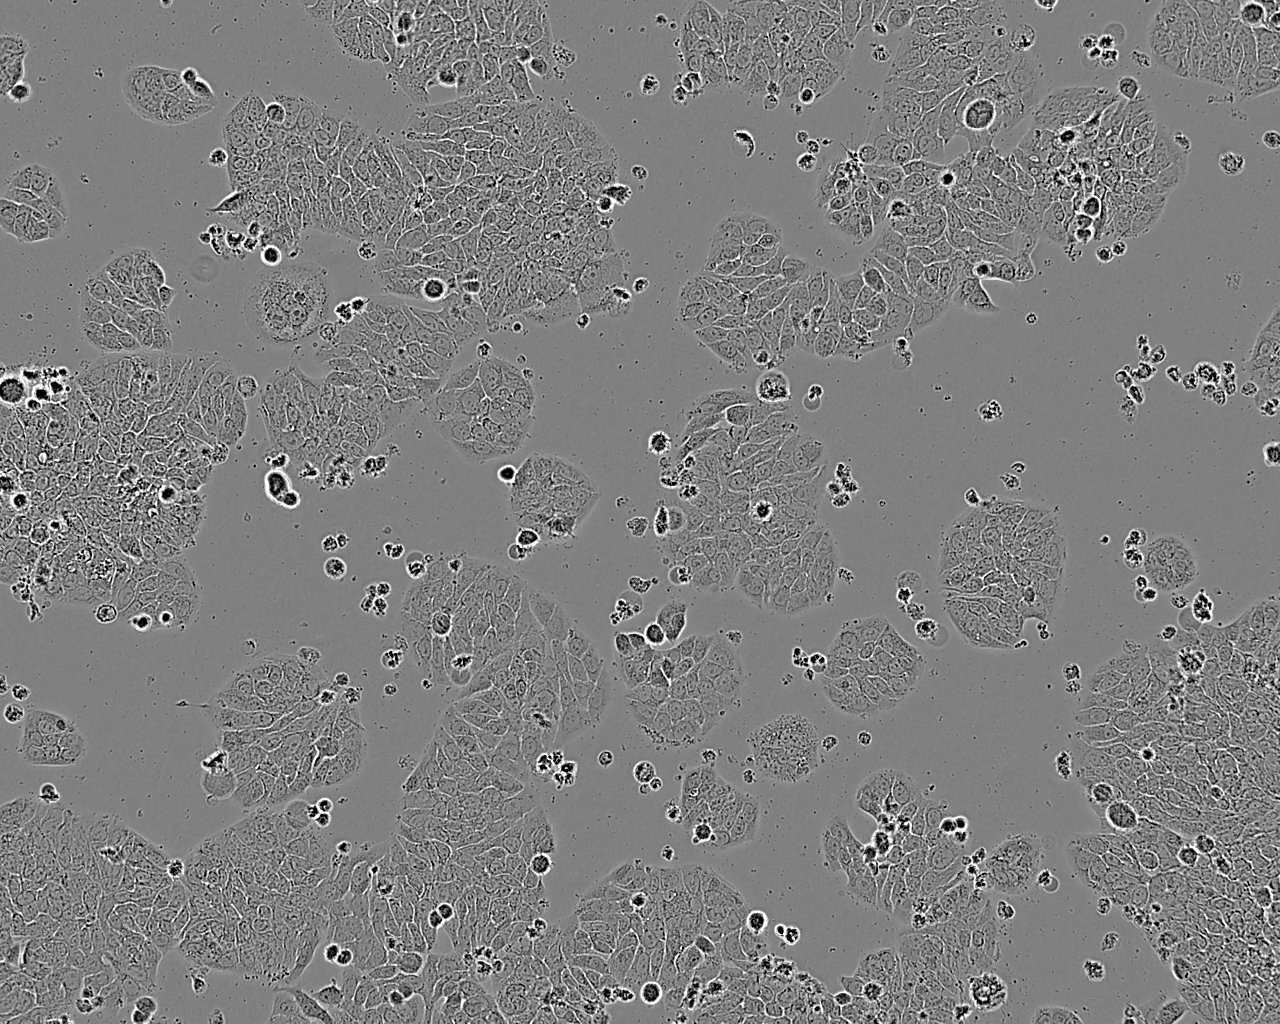 Tu 177 epithelioid cells人喉鳞癌细胞系,Tu 177 epithelioid cells